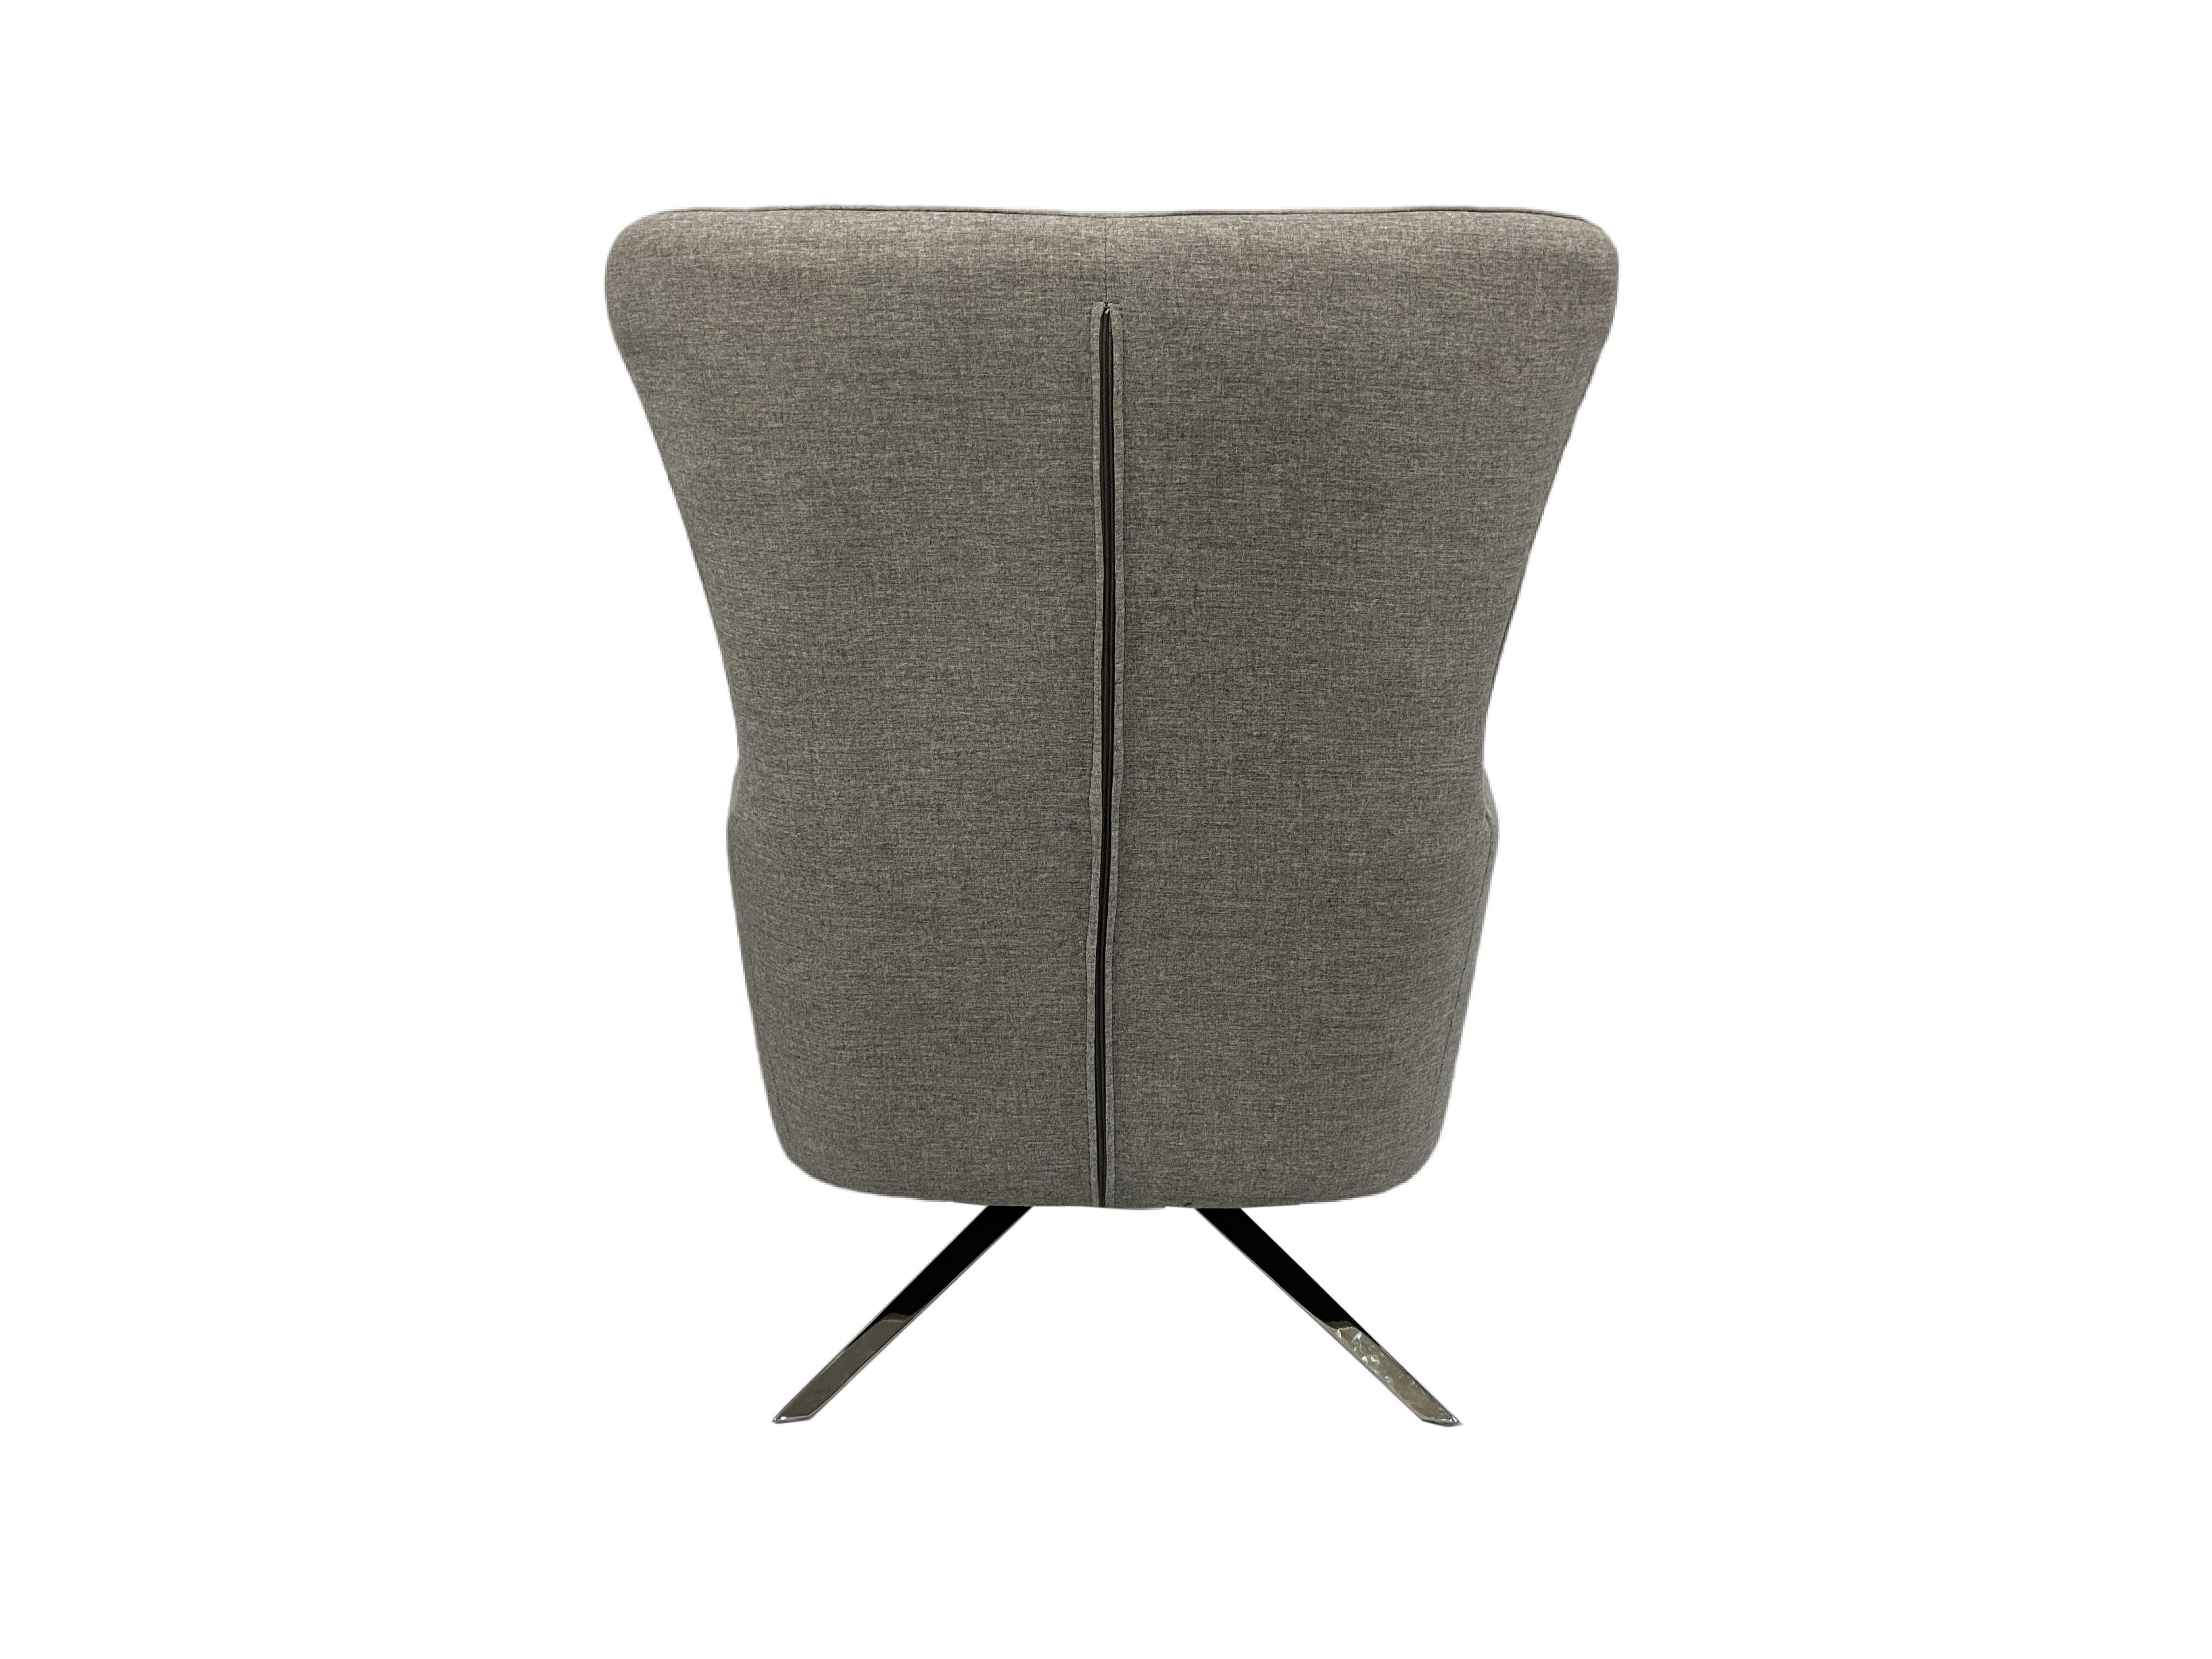 UBesGoo Modern Style Comfortable Swivel Lounge Chair - image 5 of 7